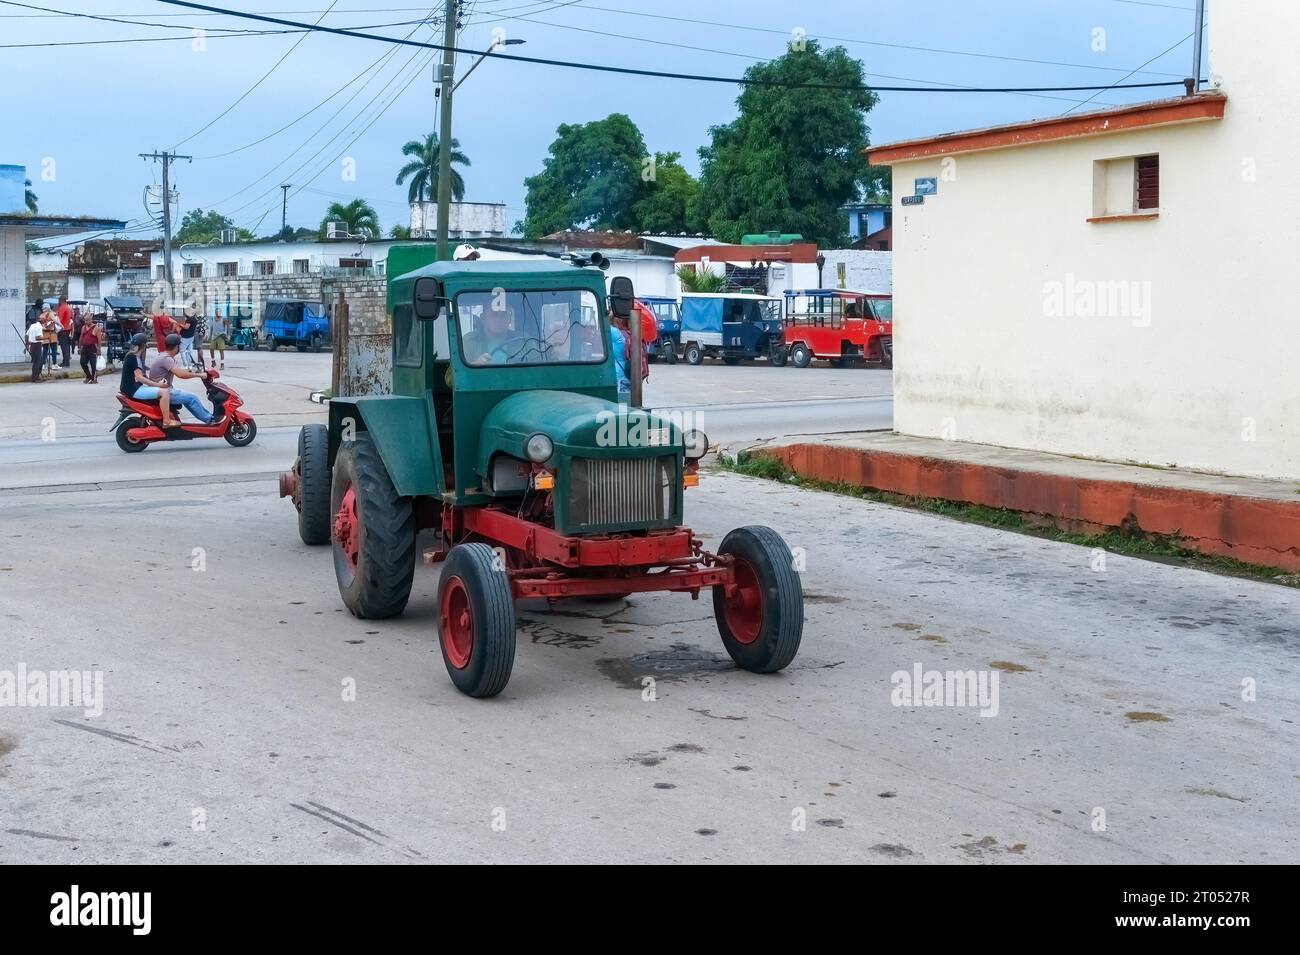 Un uomo con una camicia militare guida un vecchio trattore agricolo in una strada cittadina.Santa Clara, Cuba, 2023 Foto Stock